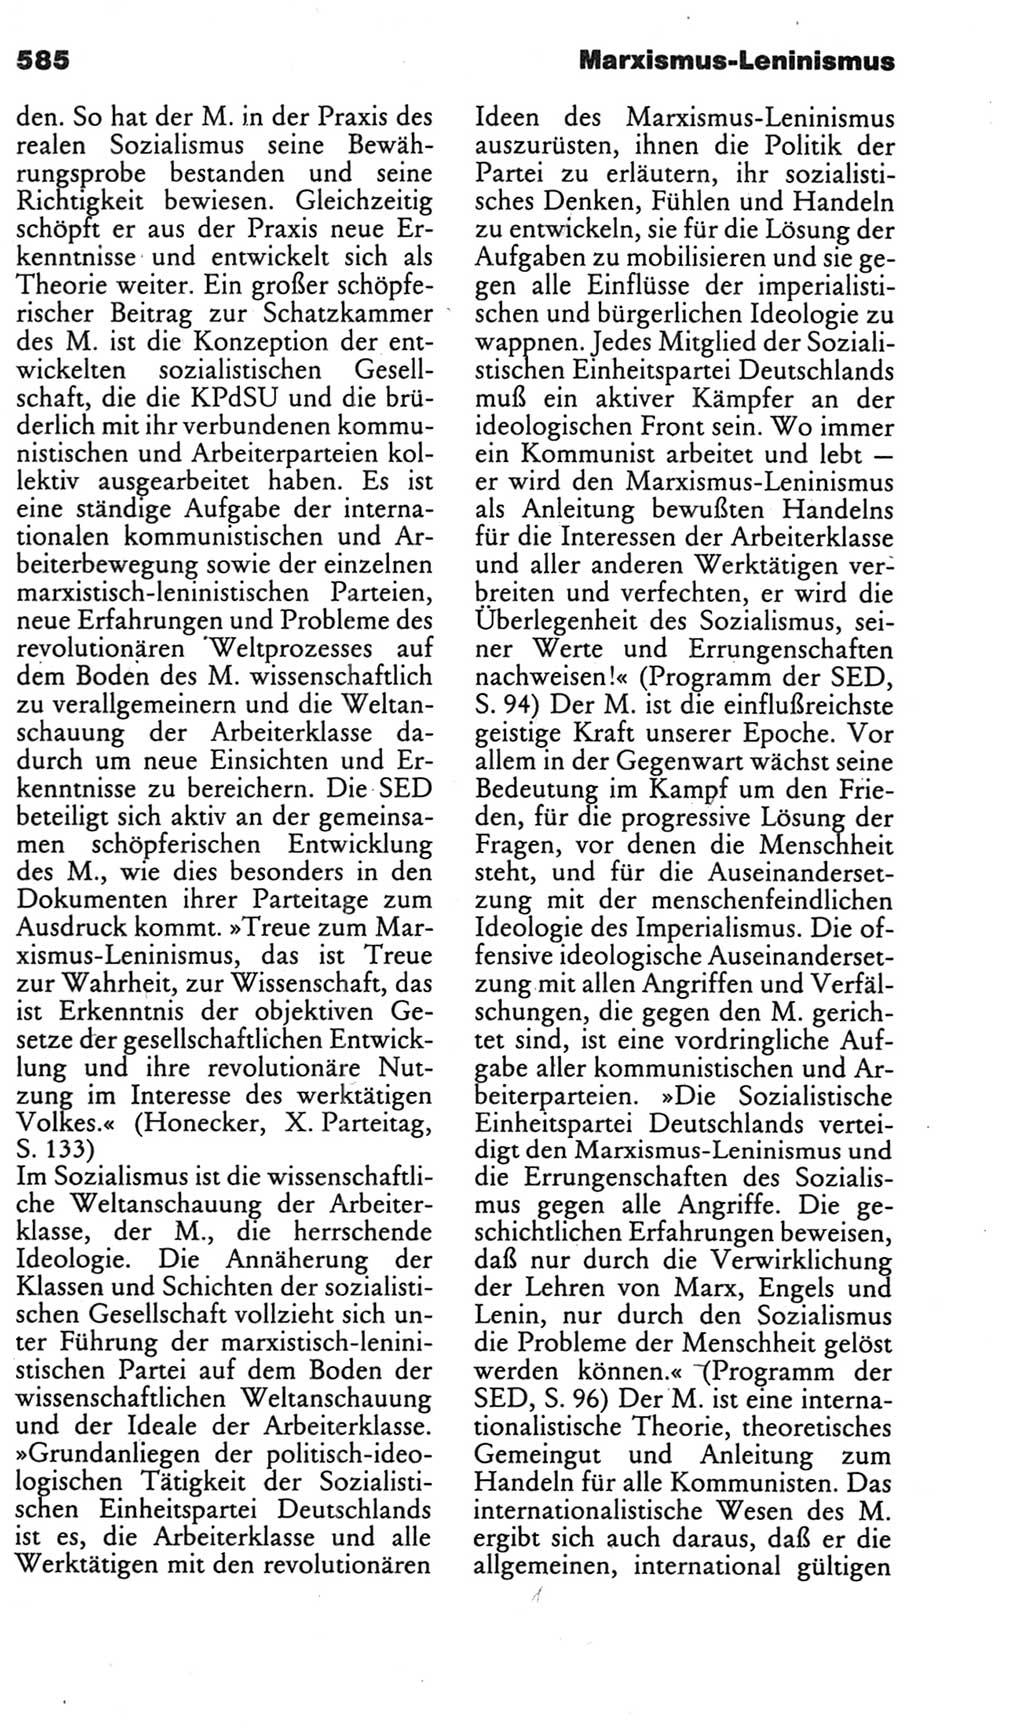 Kleines politisches Wörterbuch [Deutsche Demokratische Republik (DDR)] 1985, Seite 585 (Kl. pol. Wb. DDR 1985, S. 585)